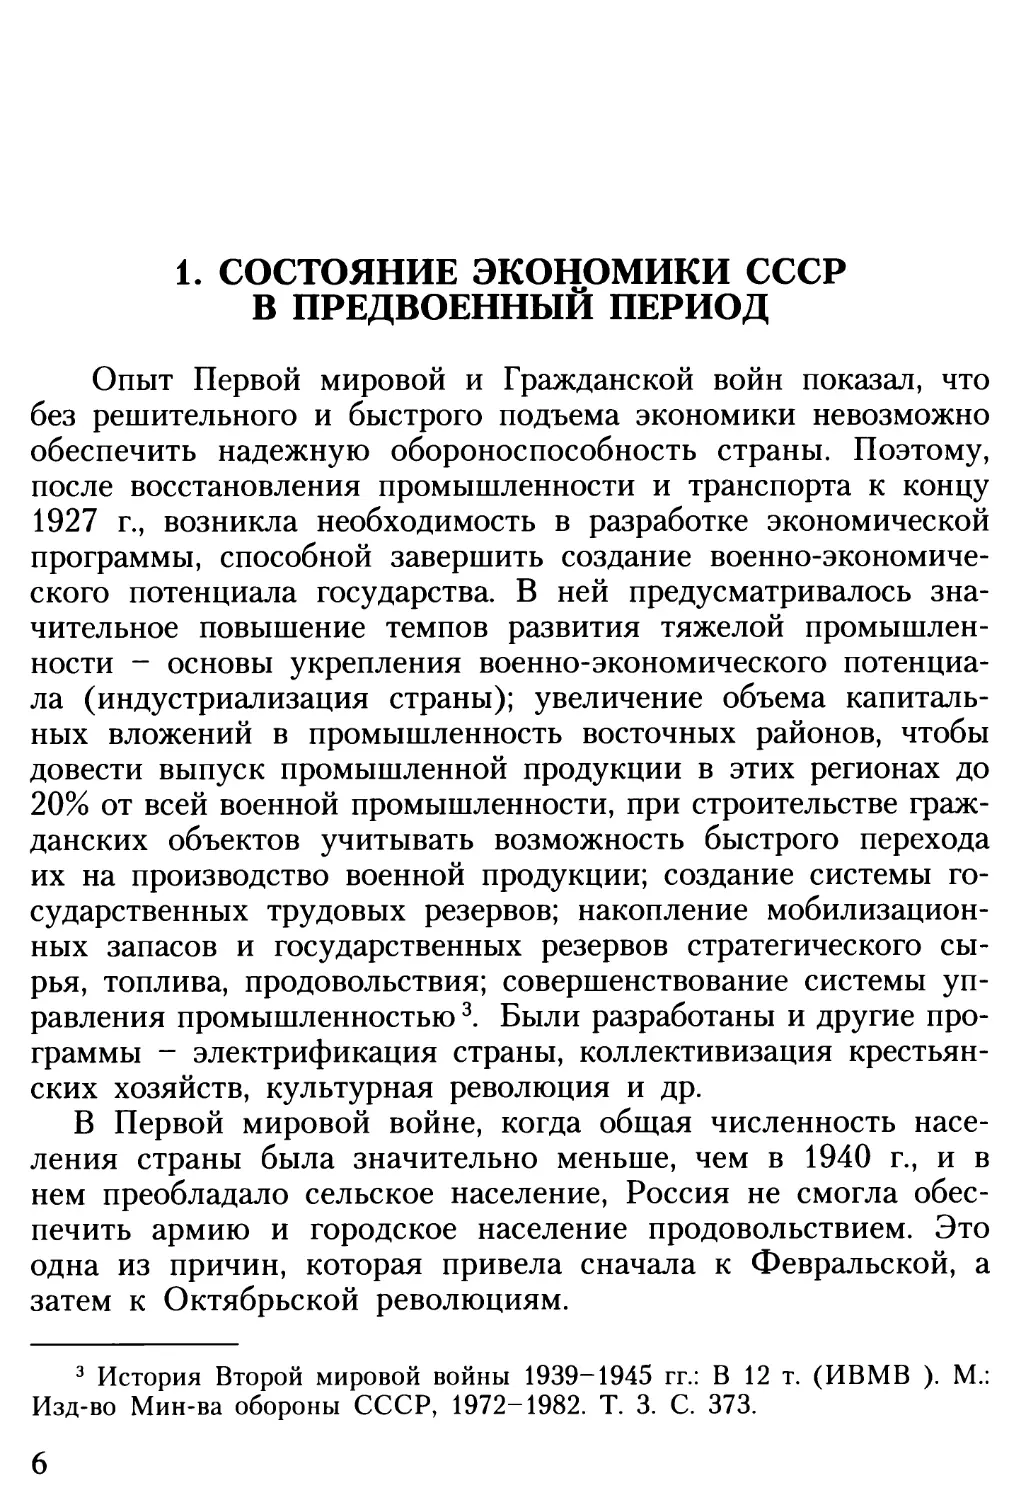 1. Состояние экономики СССР в предвоенный период